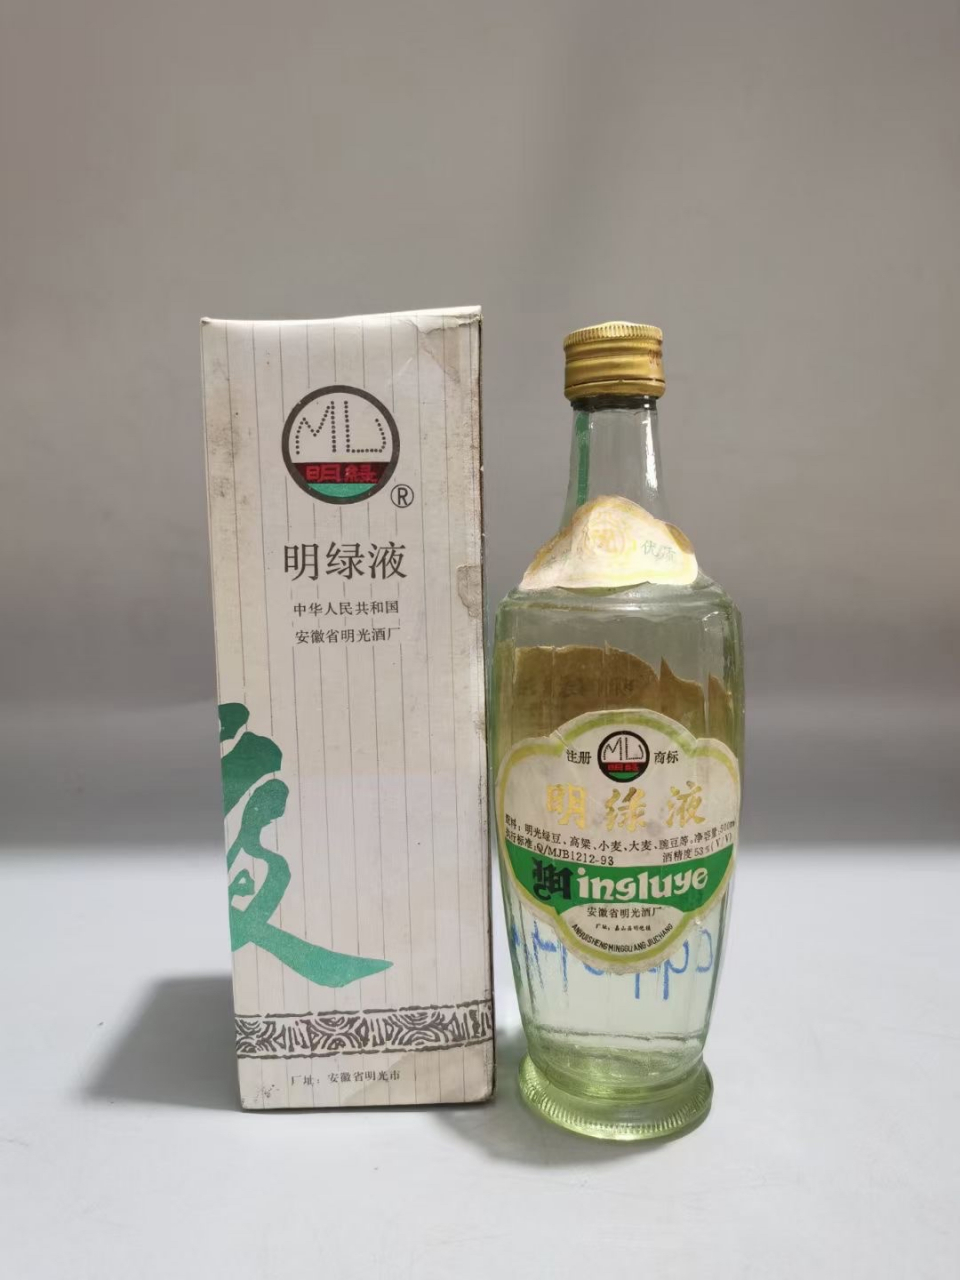 95年明绿液一瓶,带盒子,品像如图